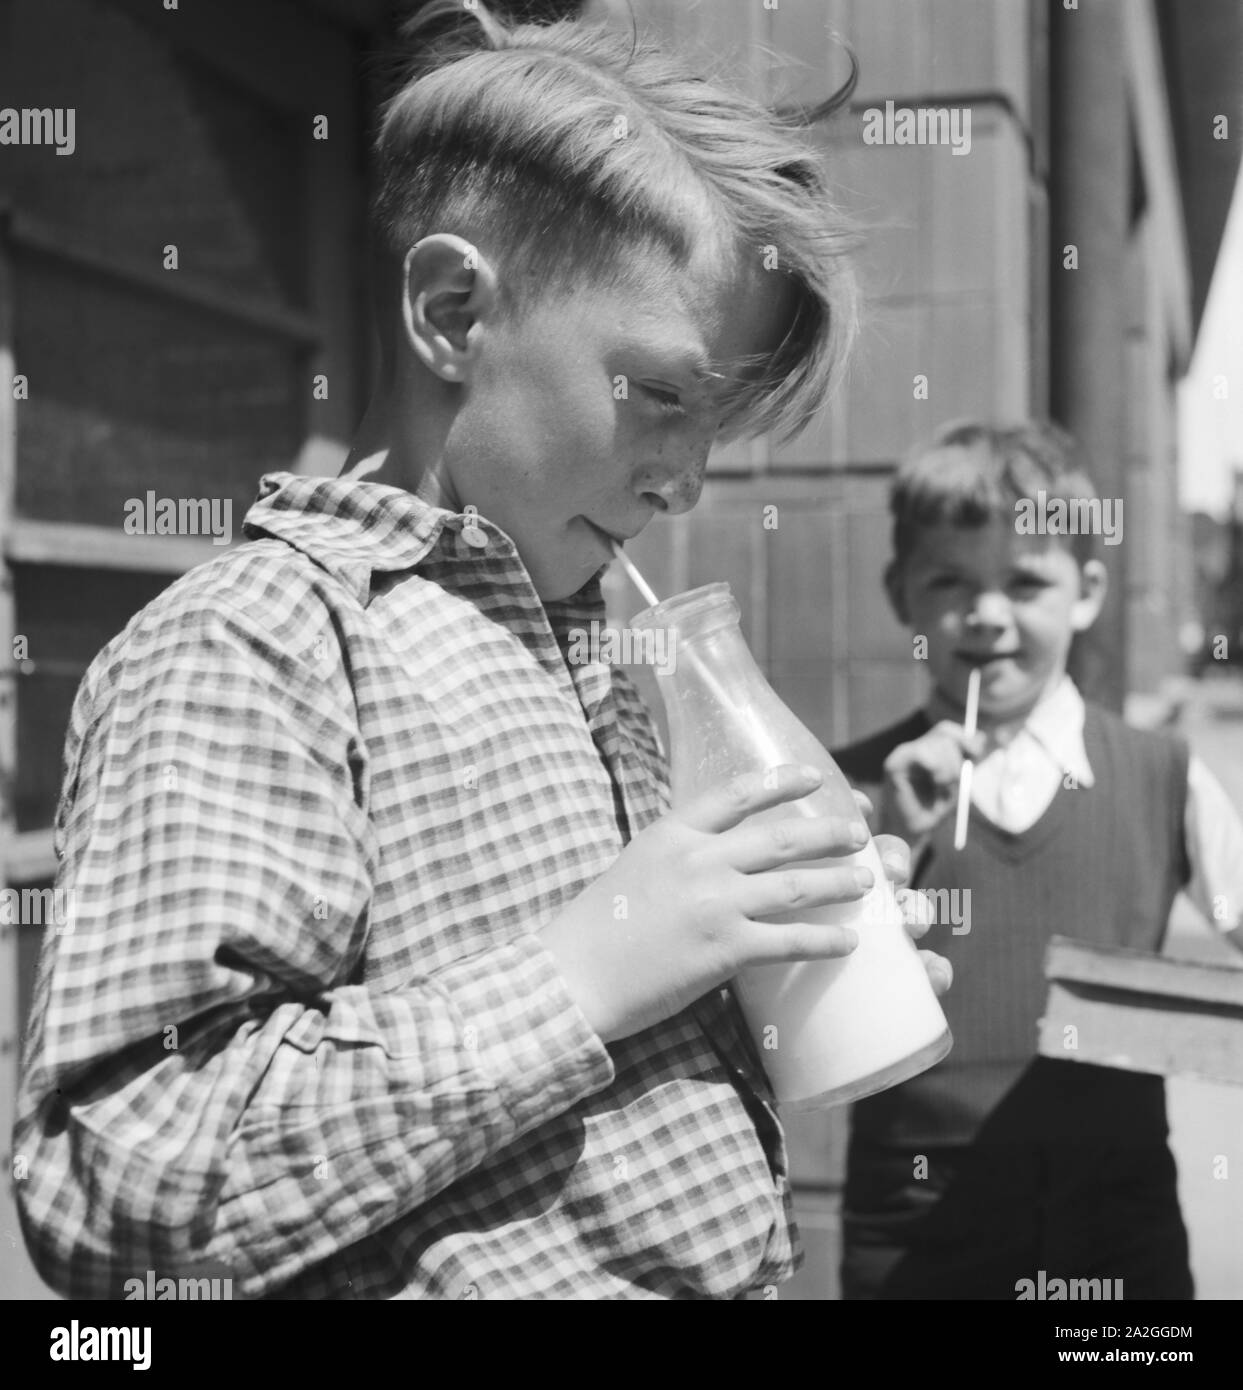 Junge aus Tangermünde, Deutschland 1930er Jahre. A boy from Tangermuende, Germany 1930s. Stock Photo